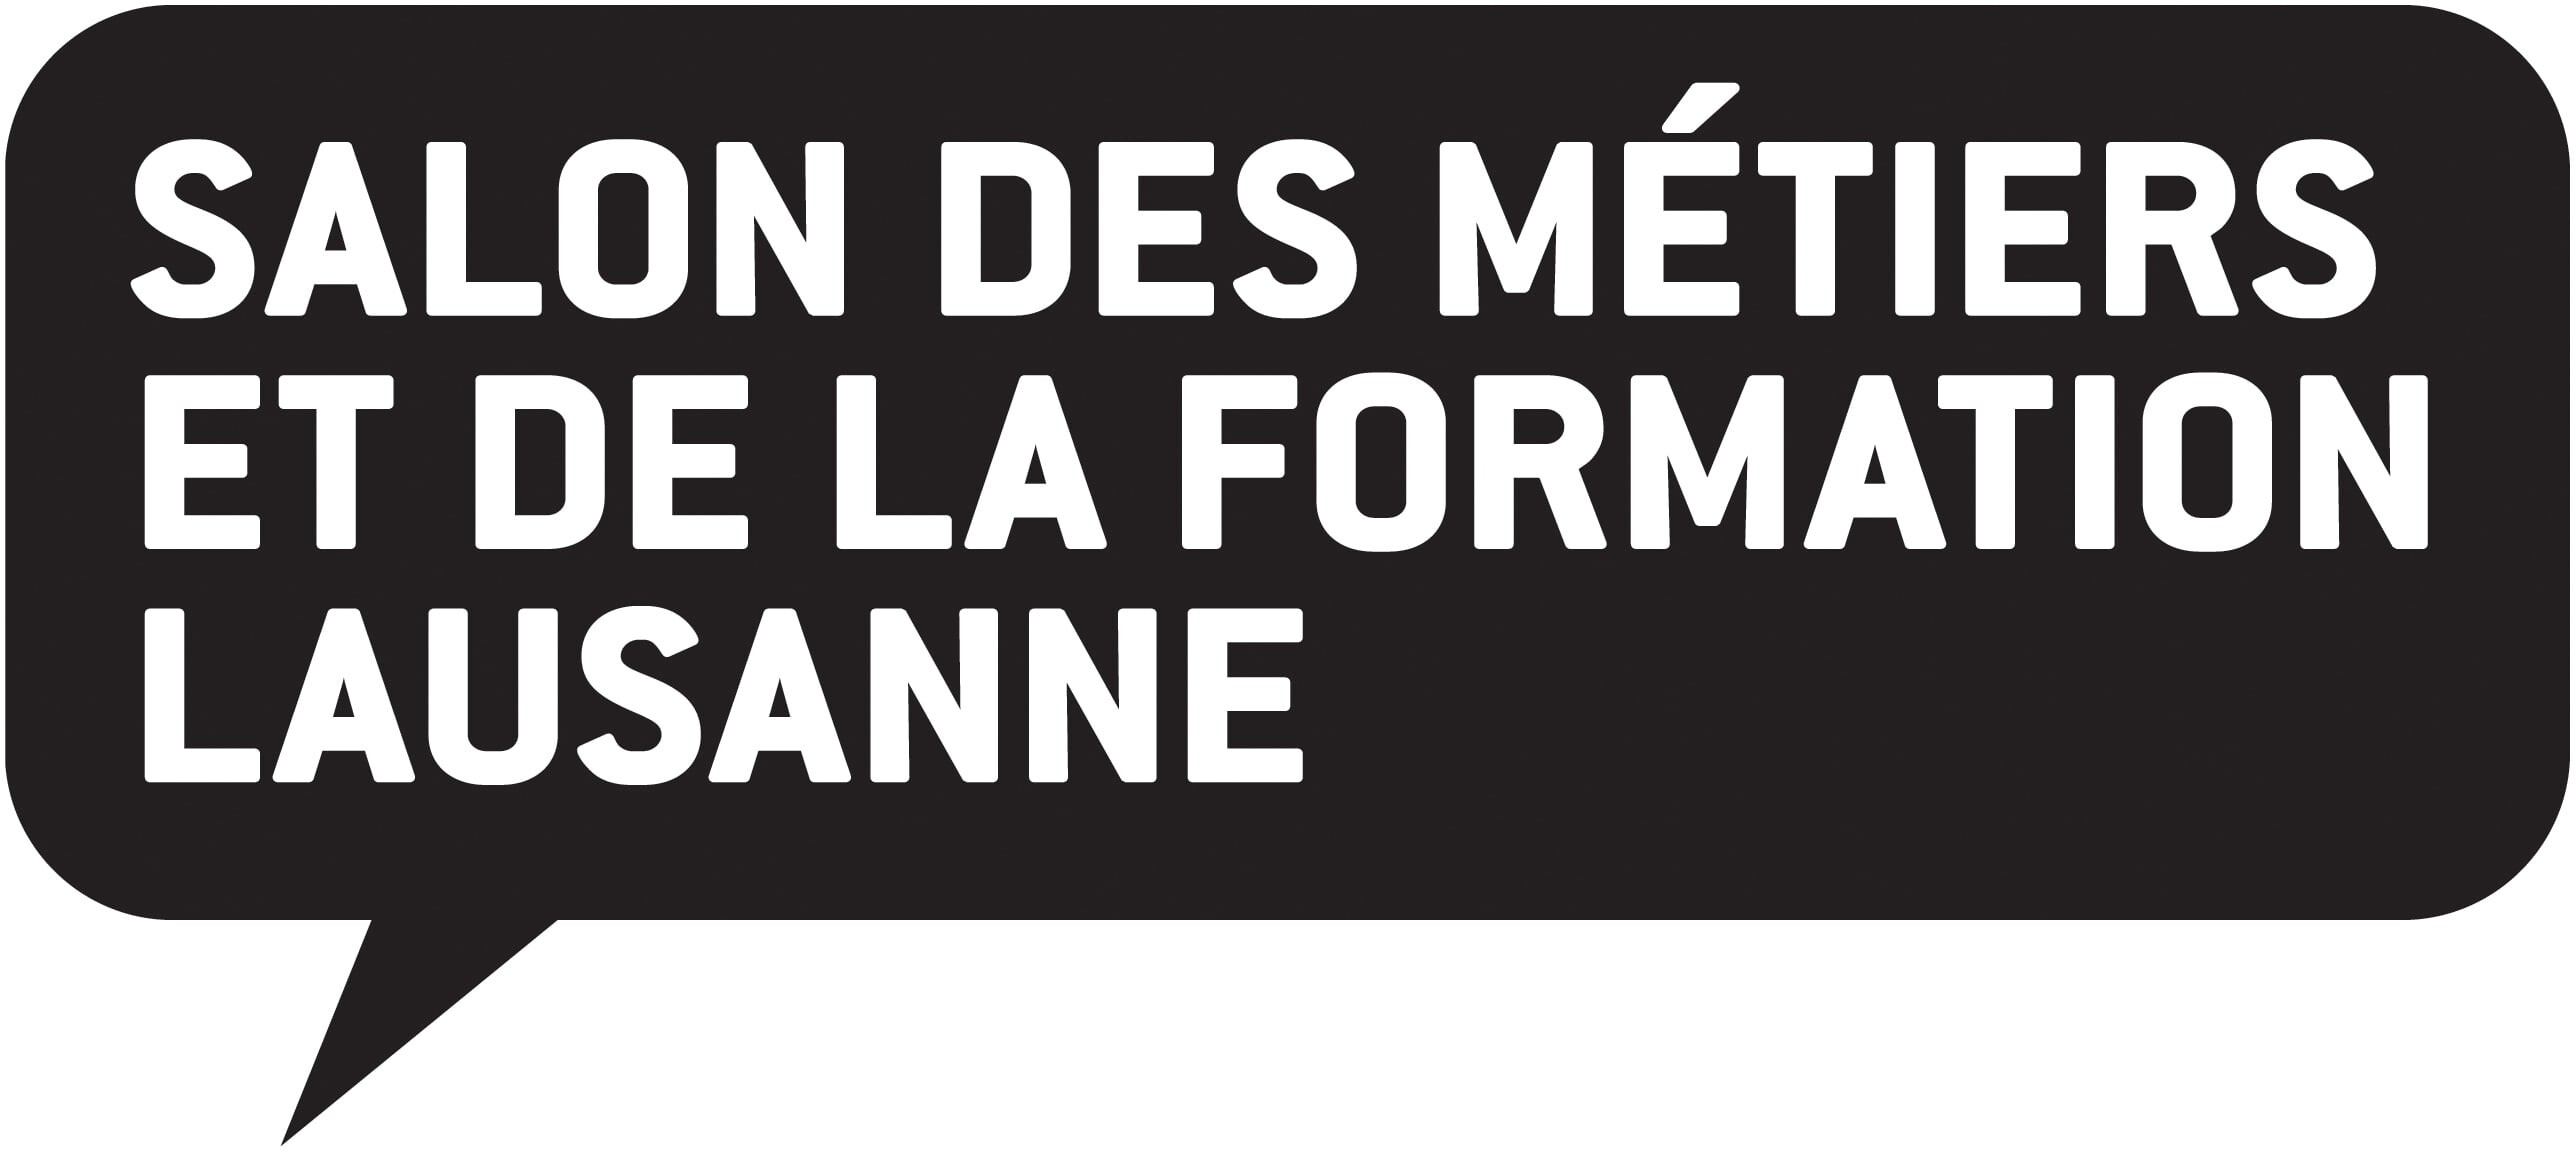 Salon des Métiers et de la Formation Lausanne cyan (.jpg)  Salon des Métiers et de la Formation Lausanne, RGB (.png)  Logo  Salon des Métiers et de la Formation Lausanne Logo nb